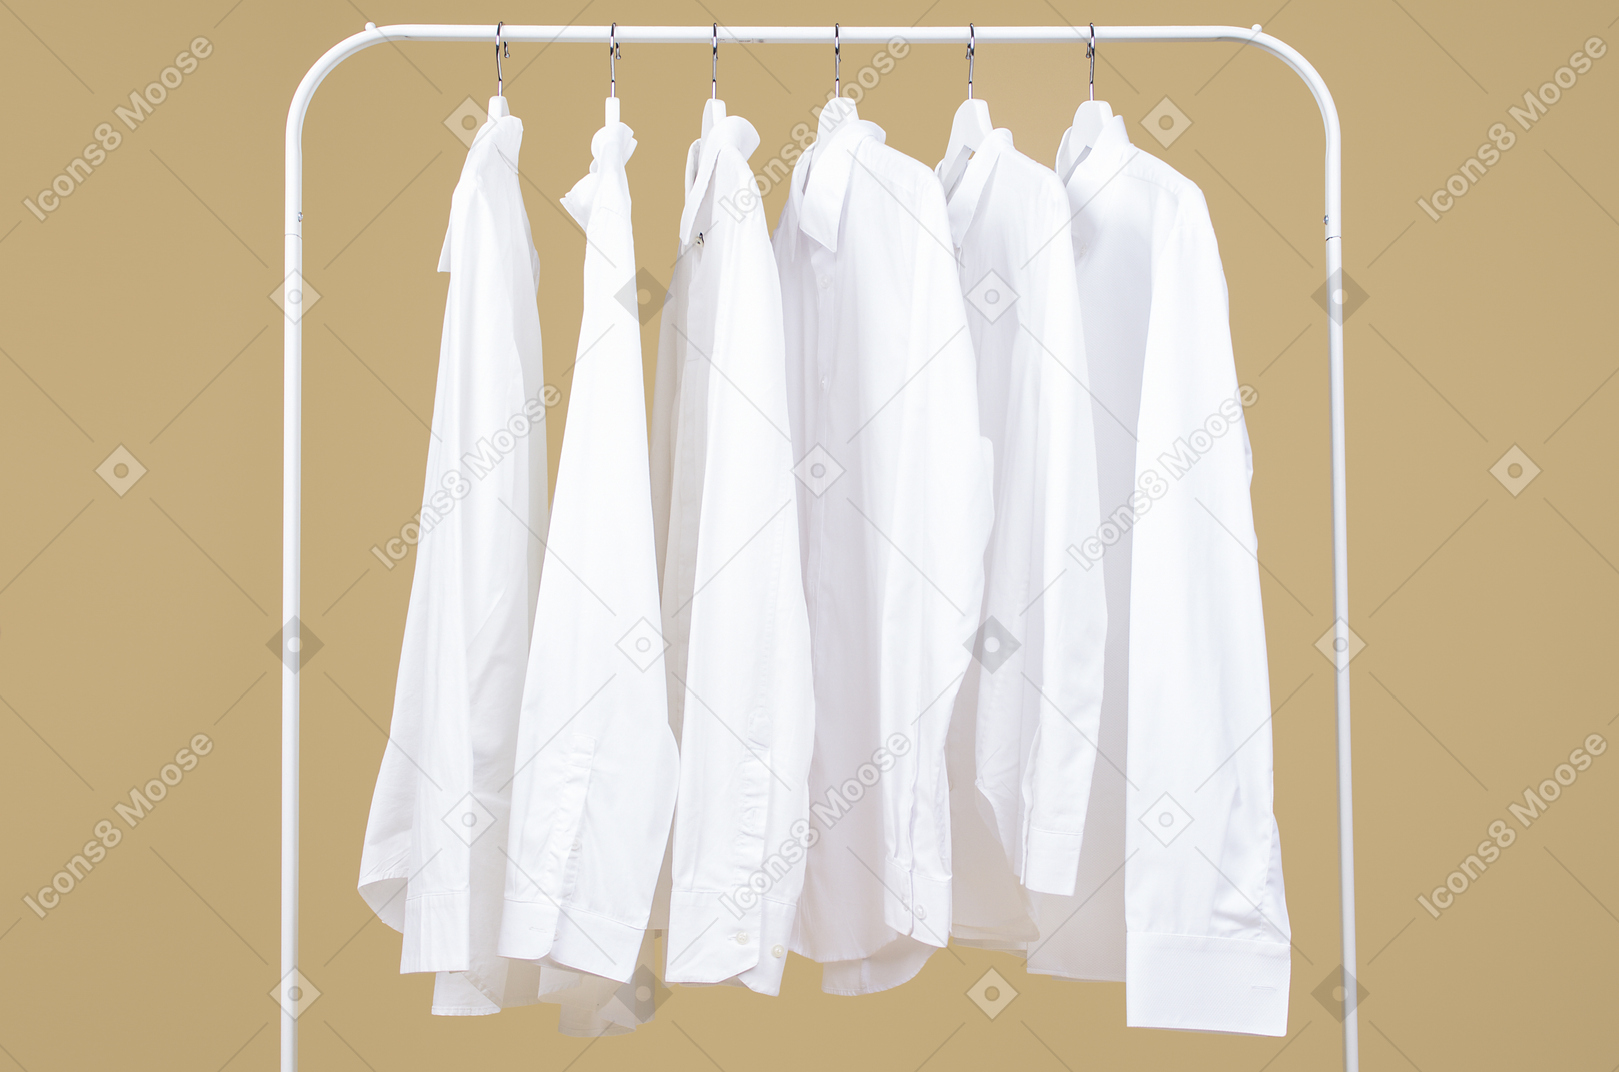 Chemises blanches sur les cintres du rang